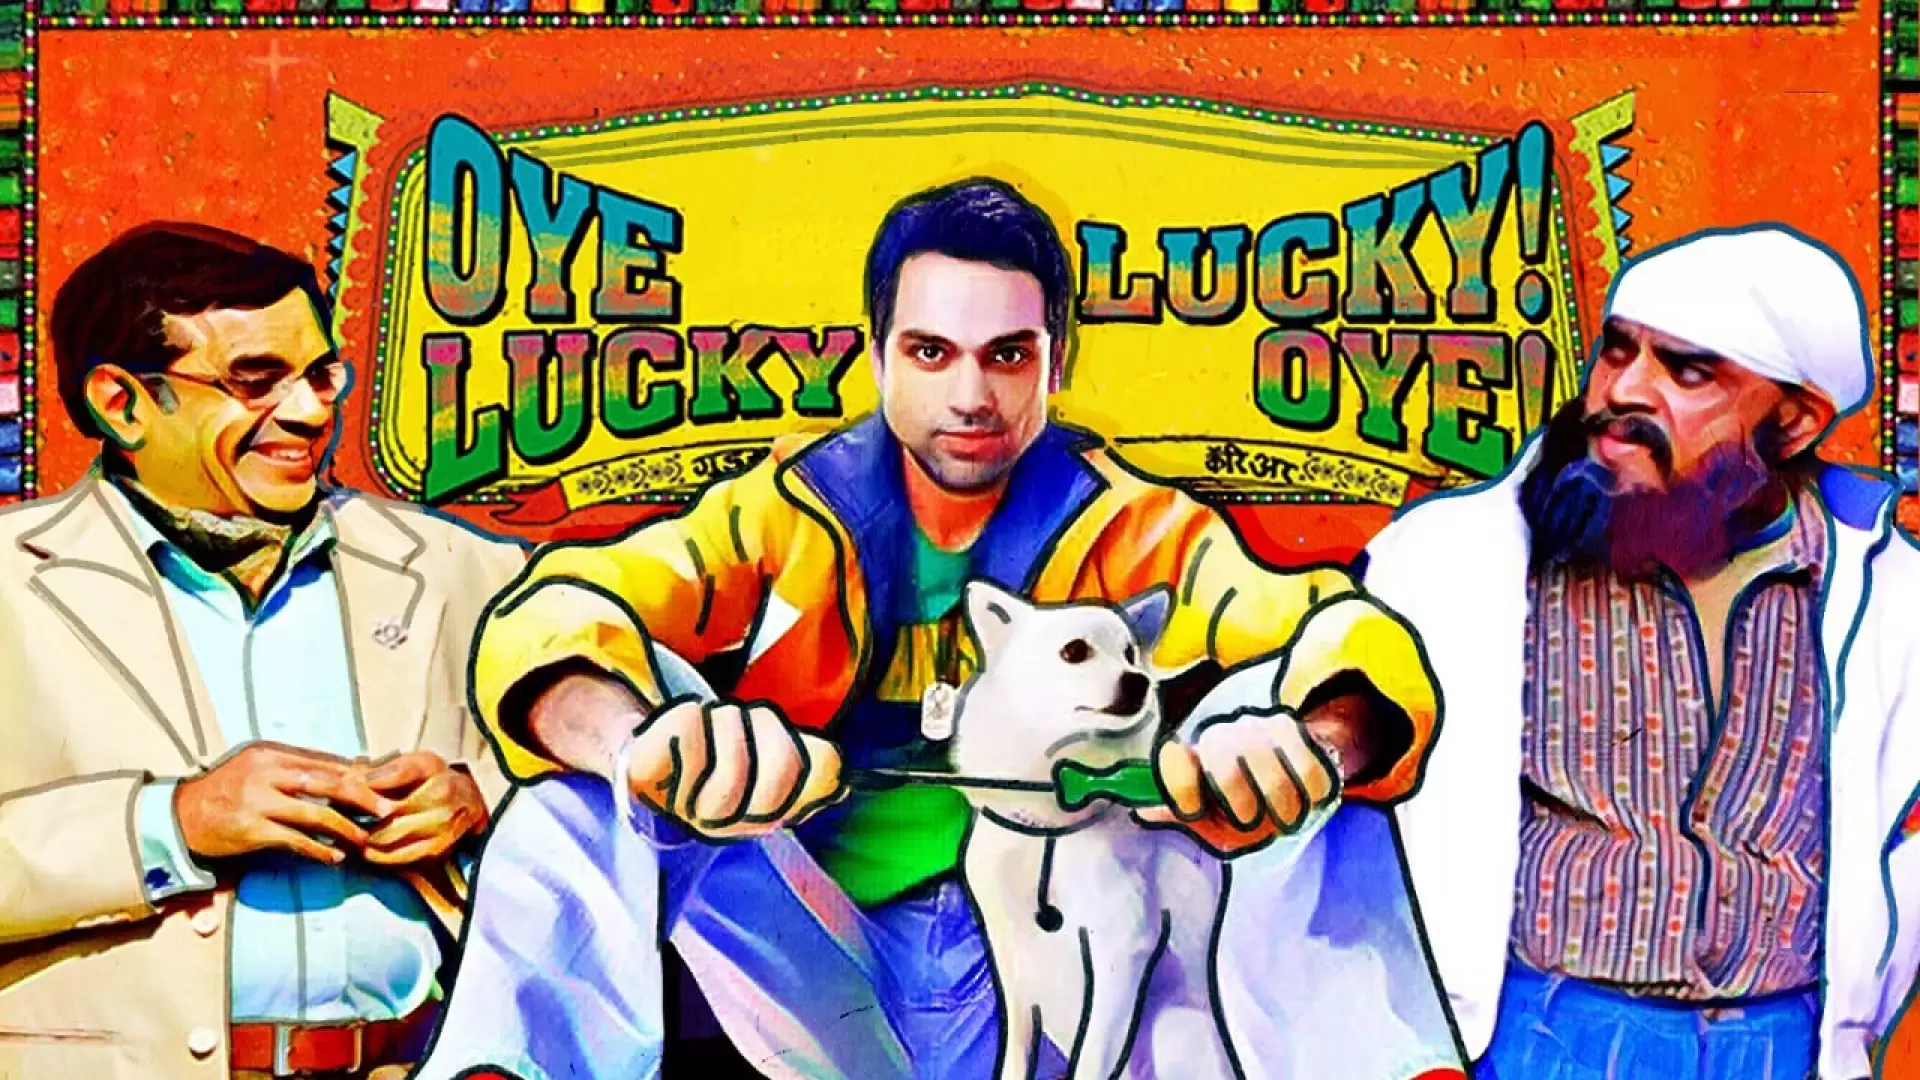 دانلود فیلم Oye Lucky! Lucky Oye! 2008 با زیرنویس فارسی